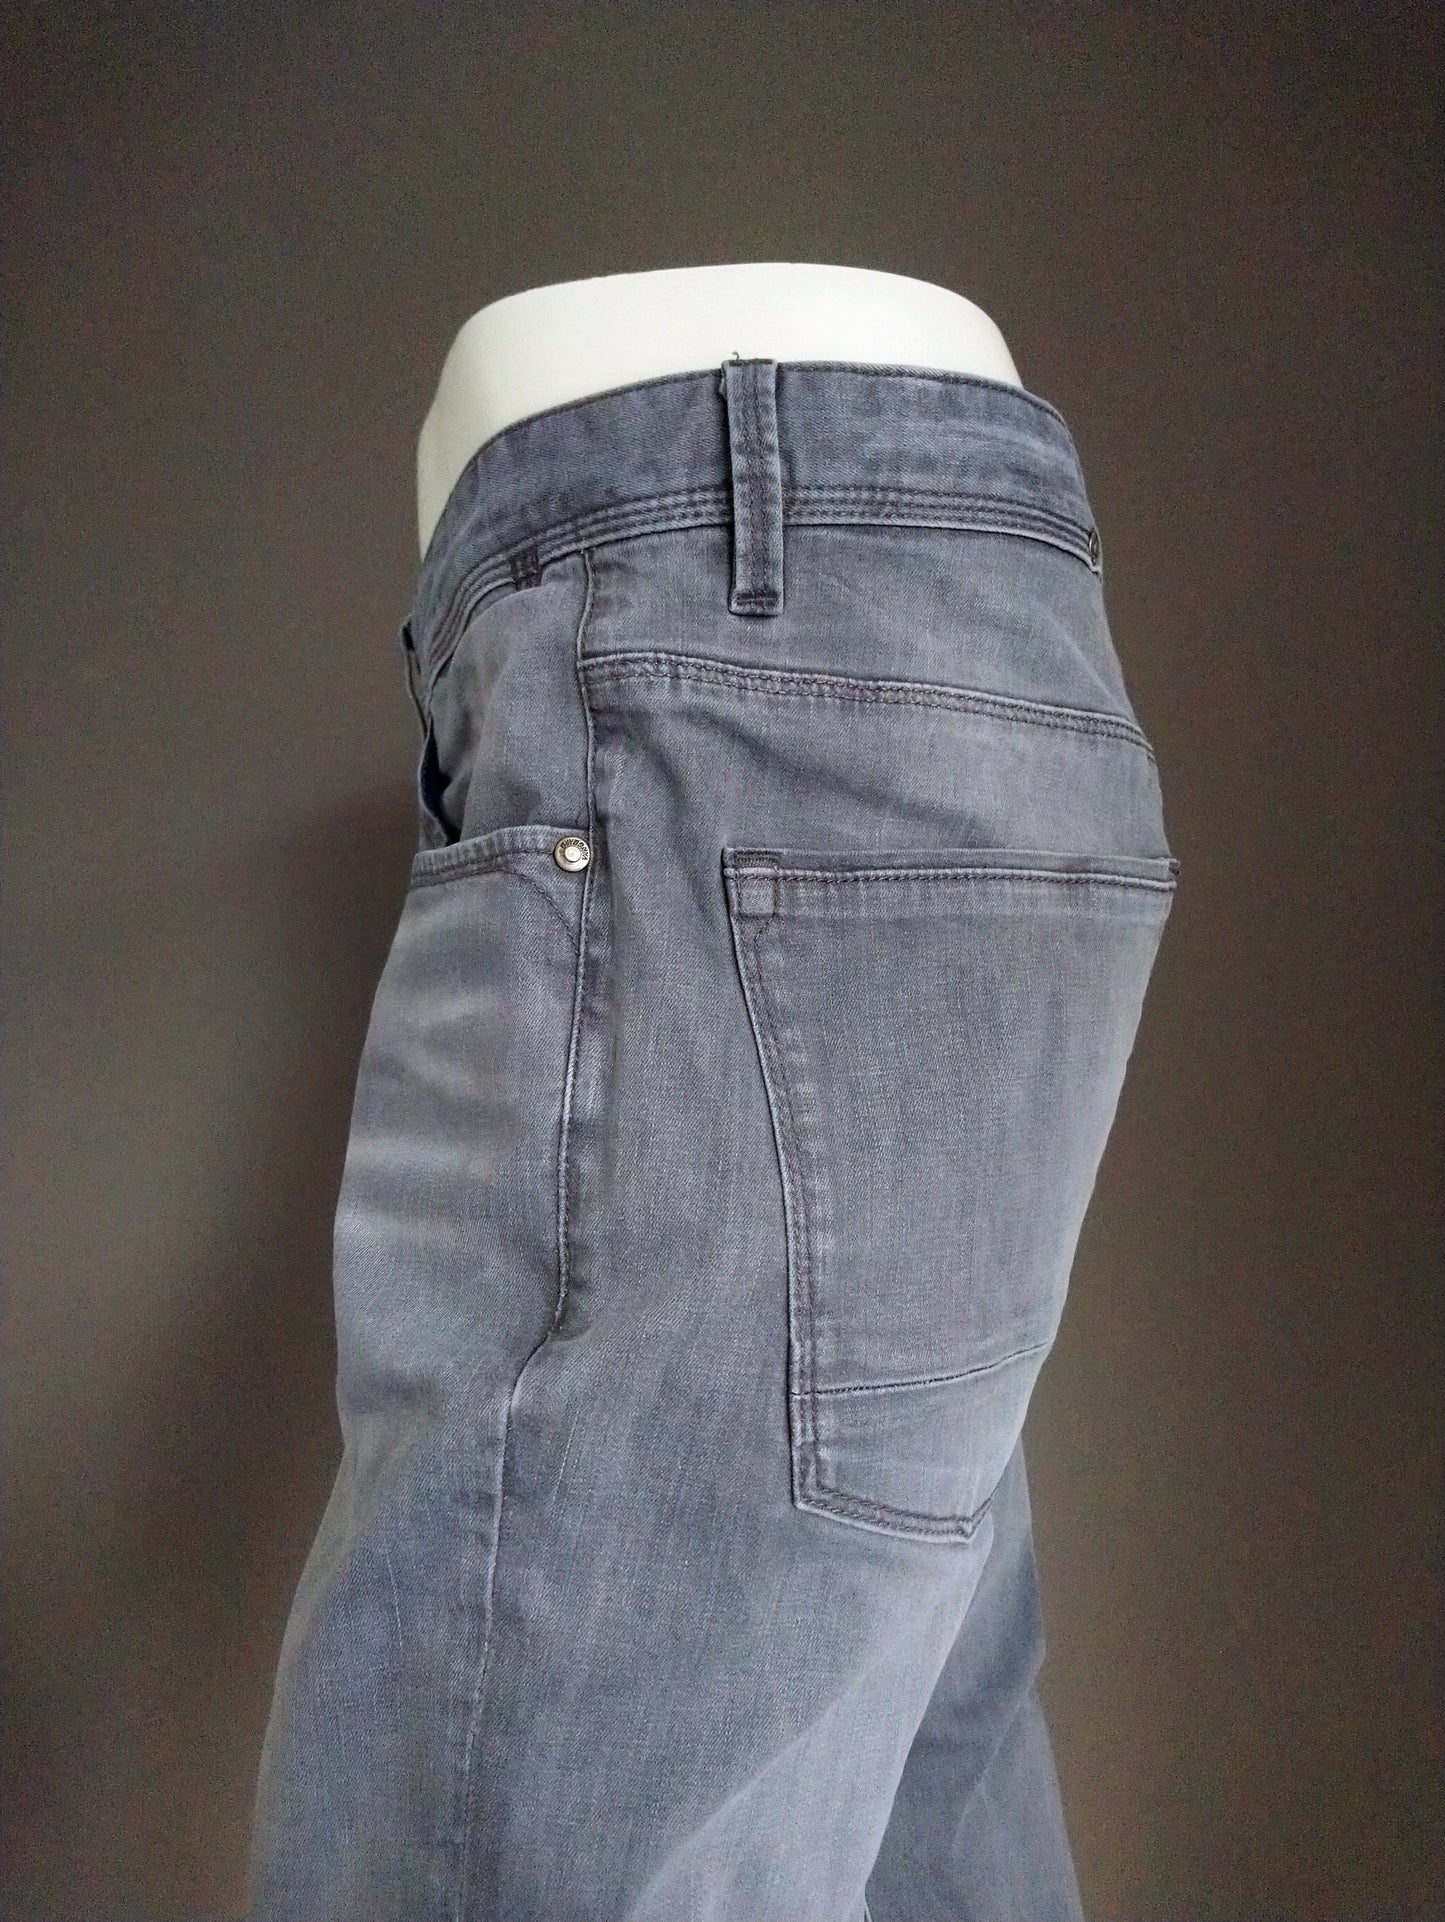 Vanguard jeans. Grijs gekleurd. Maat W33 - L26. (ingekort)